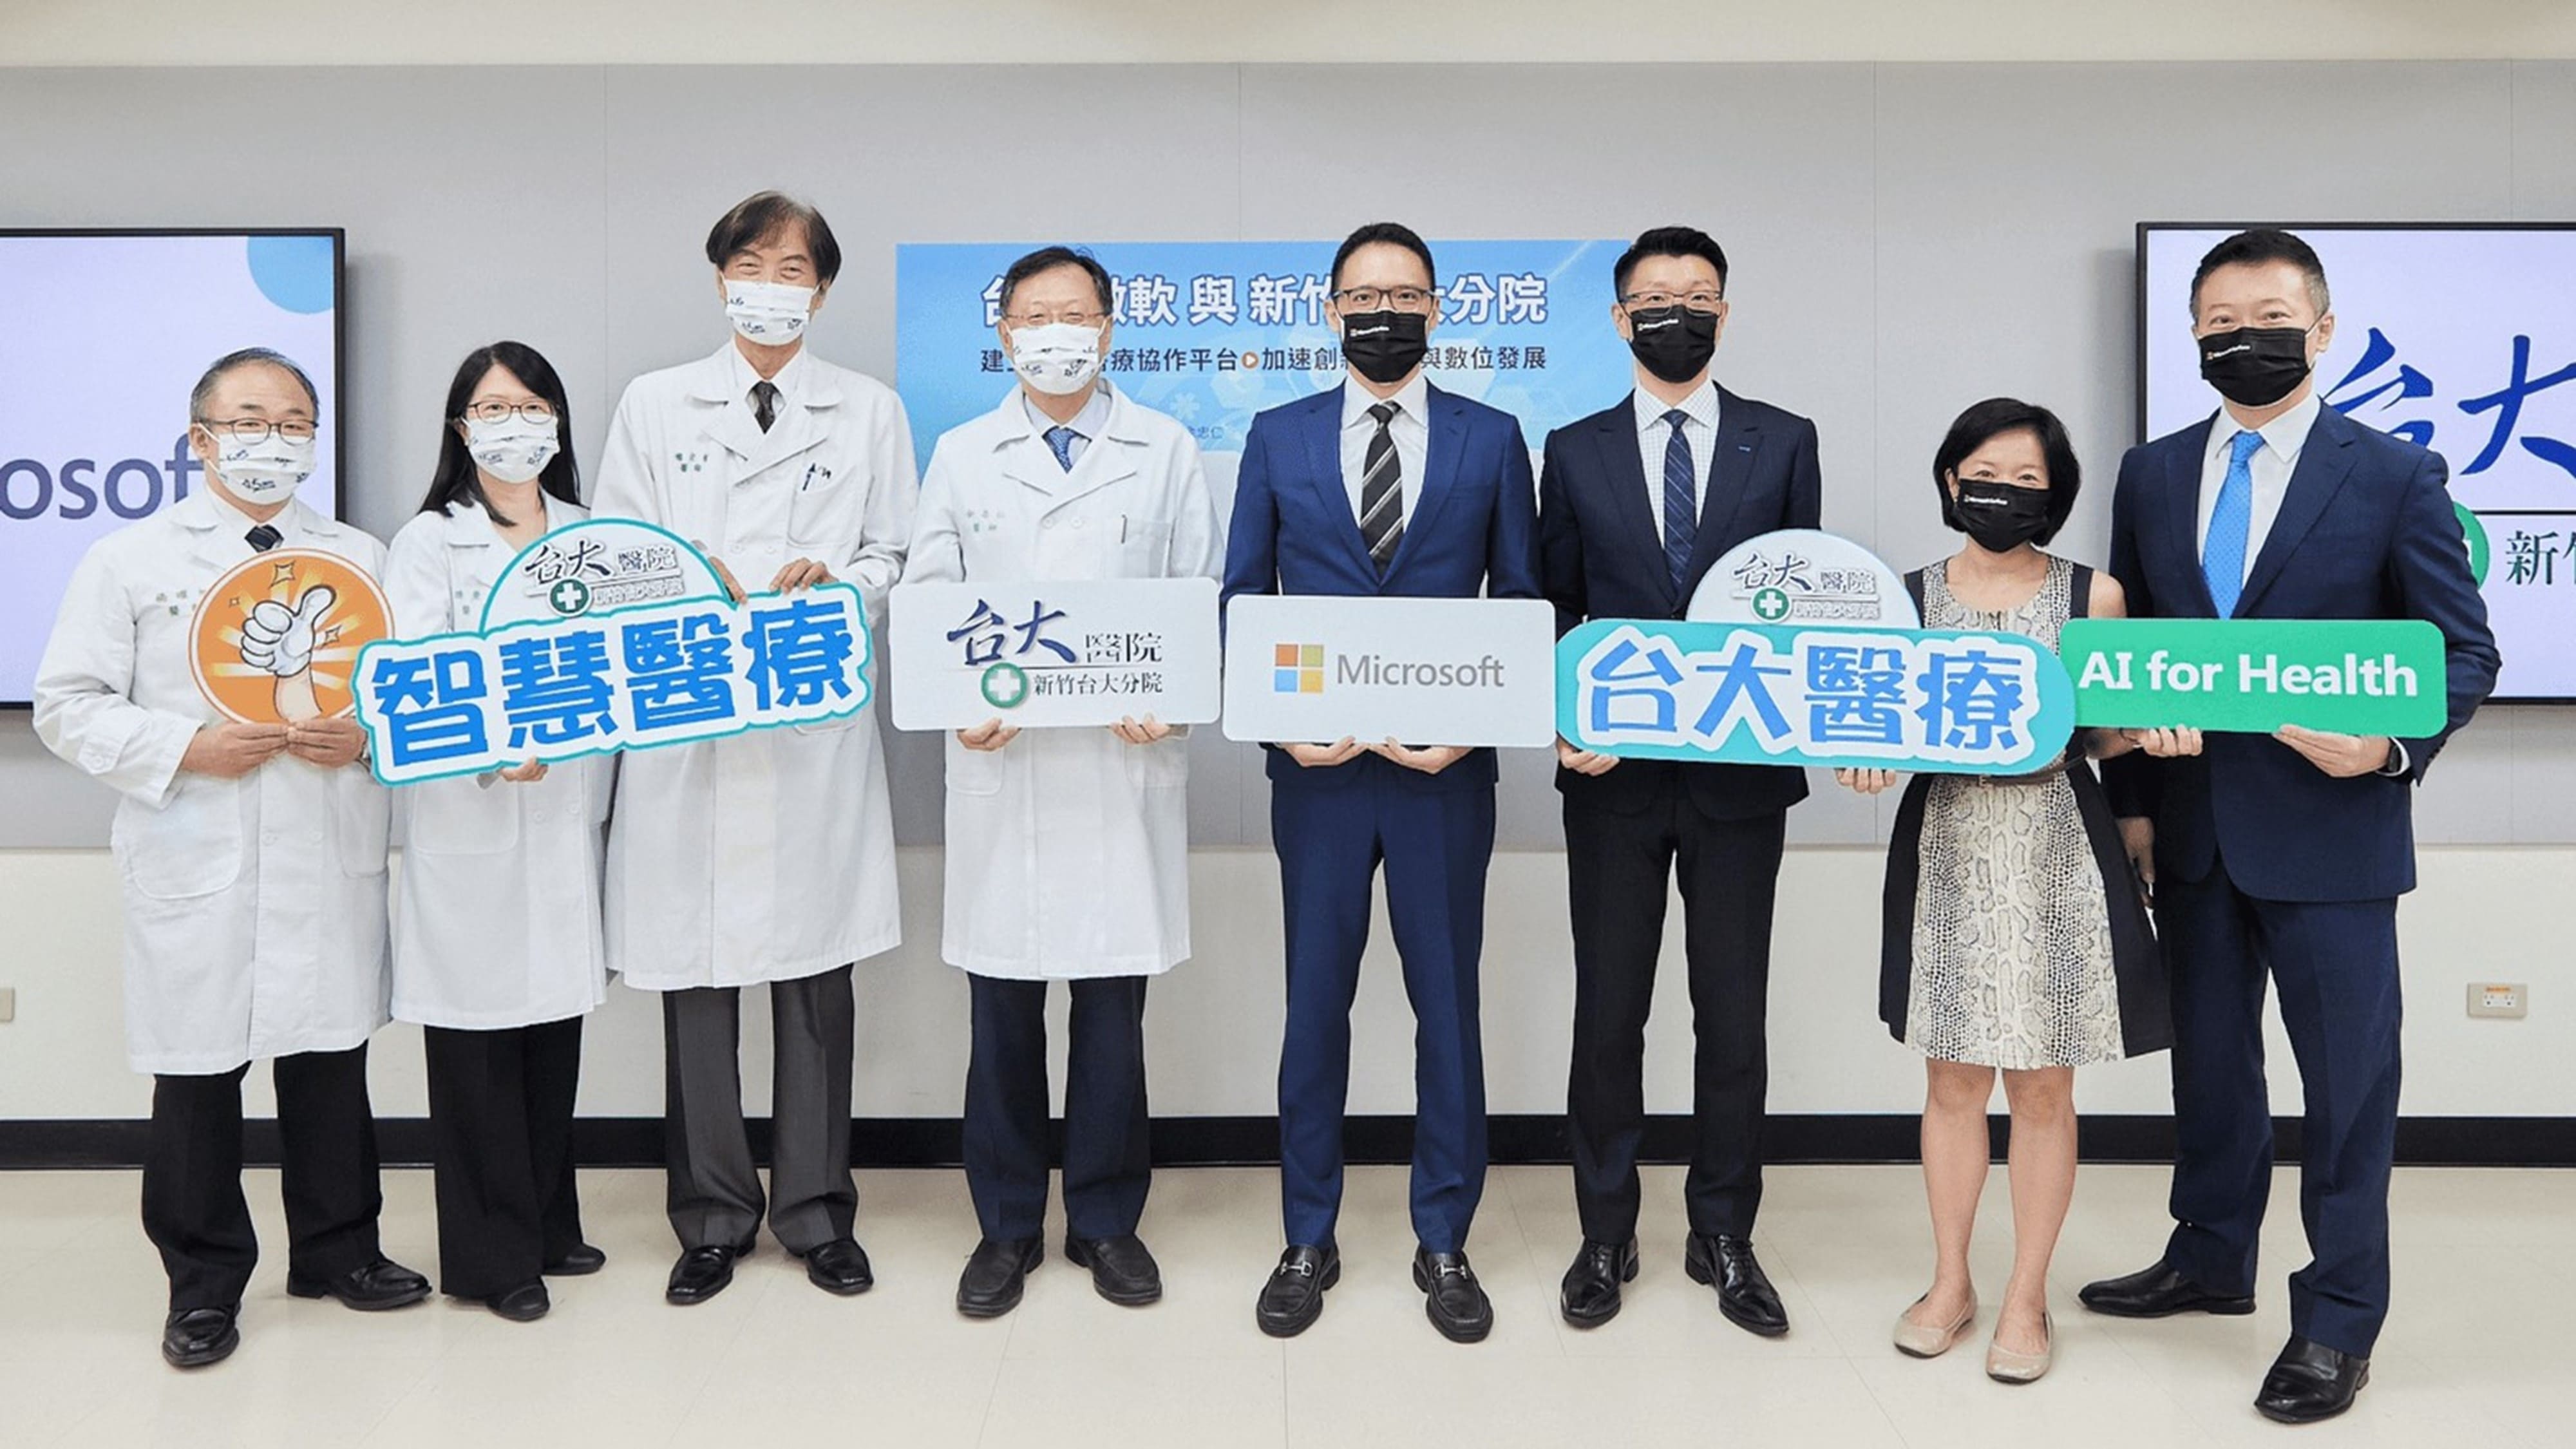 台灣微軟偕同自由系統等合作夥伴 共同切入智慧醫療領域